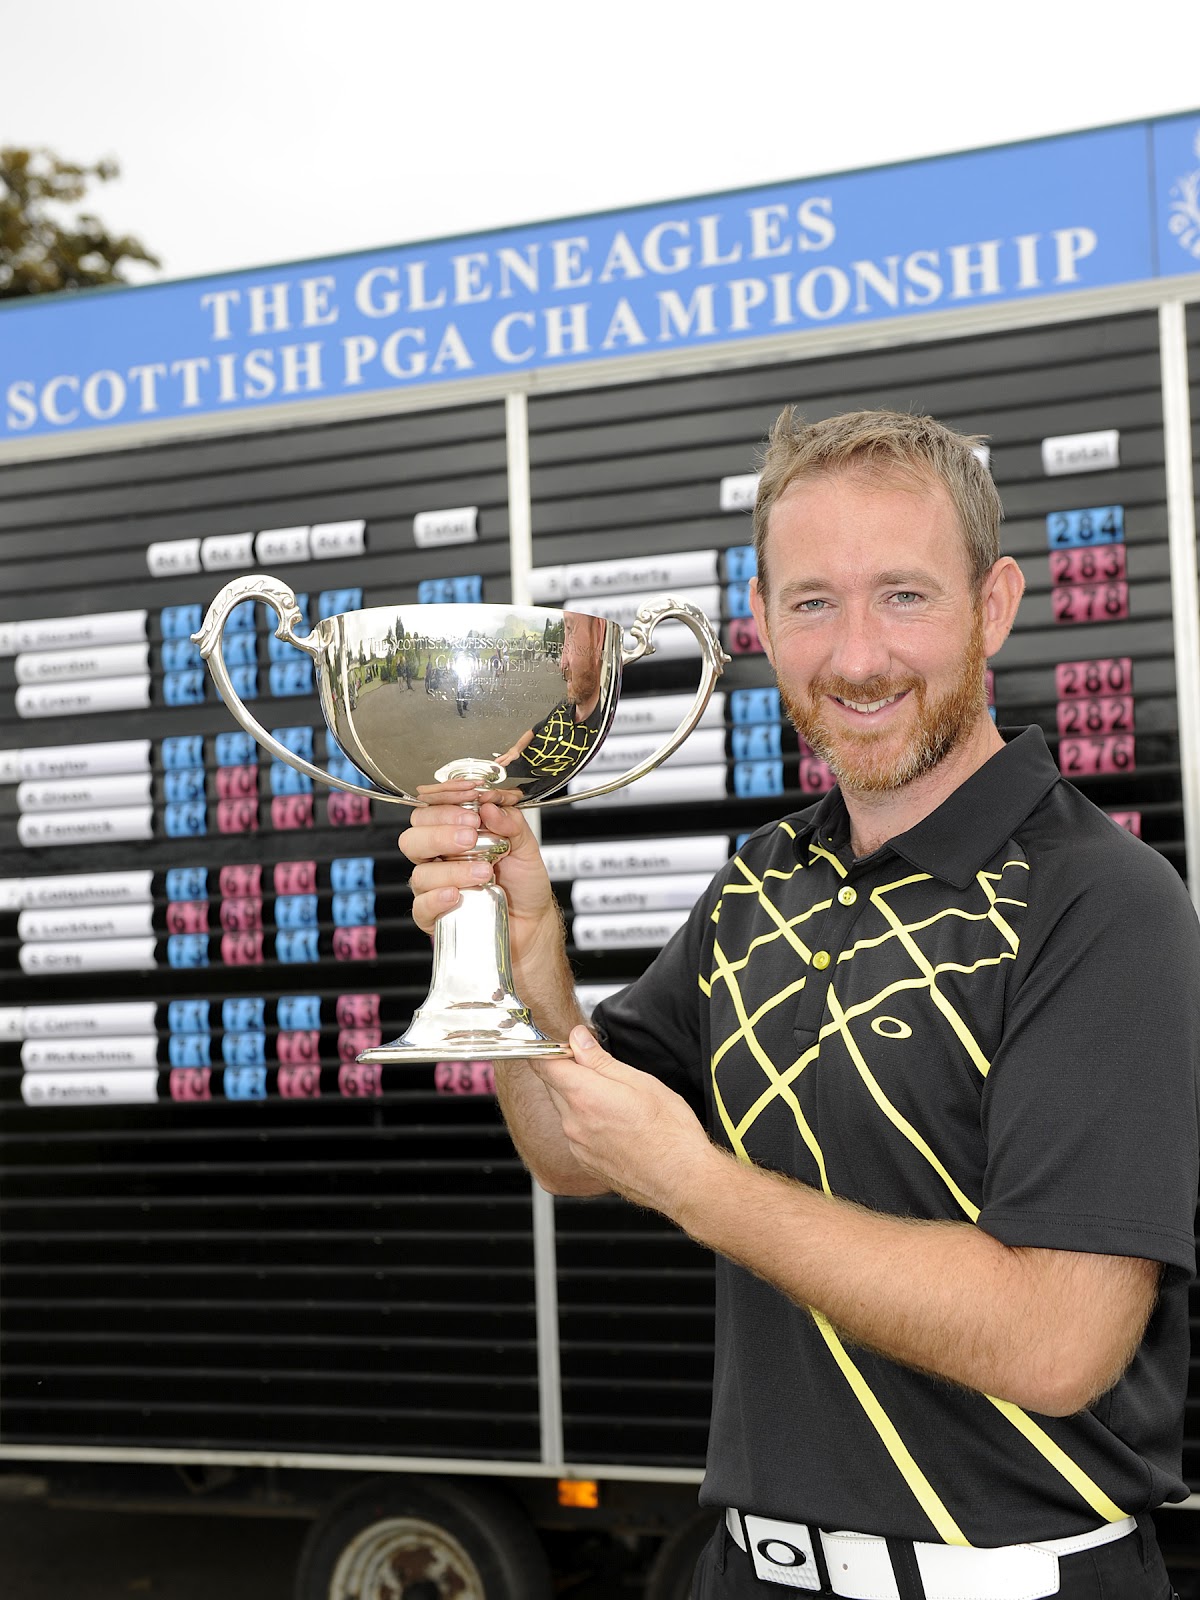 Scottish pga championship